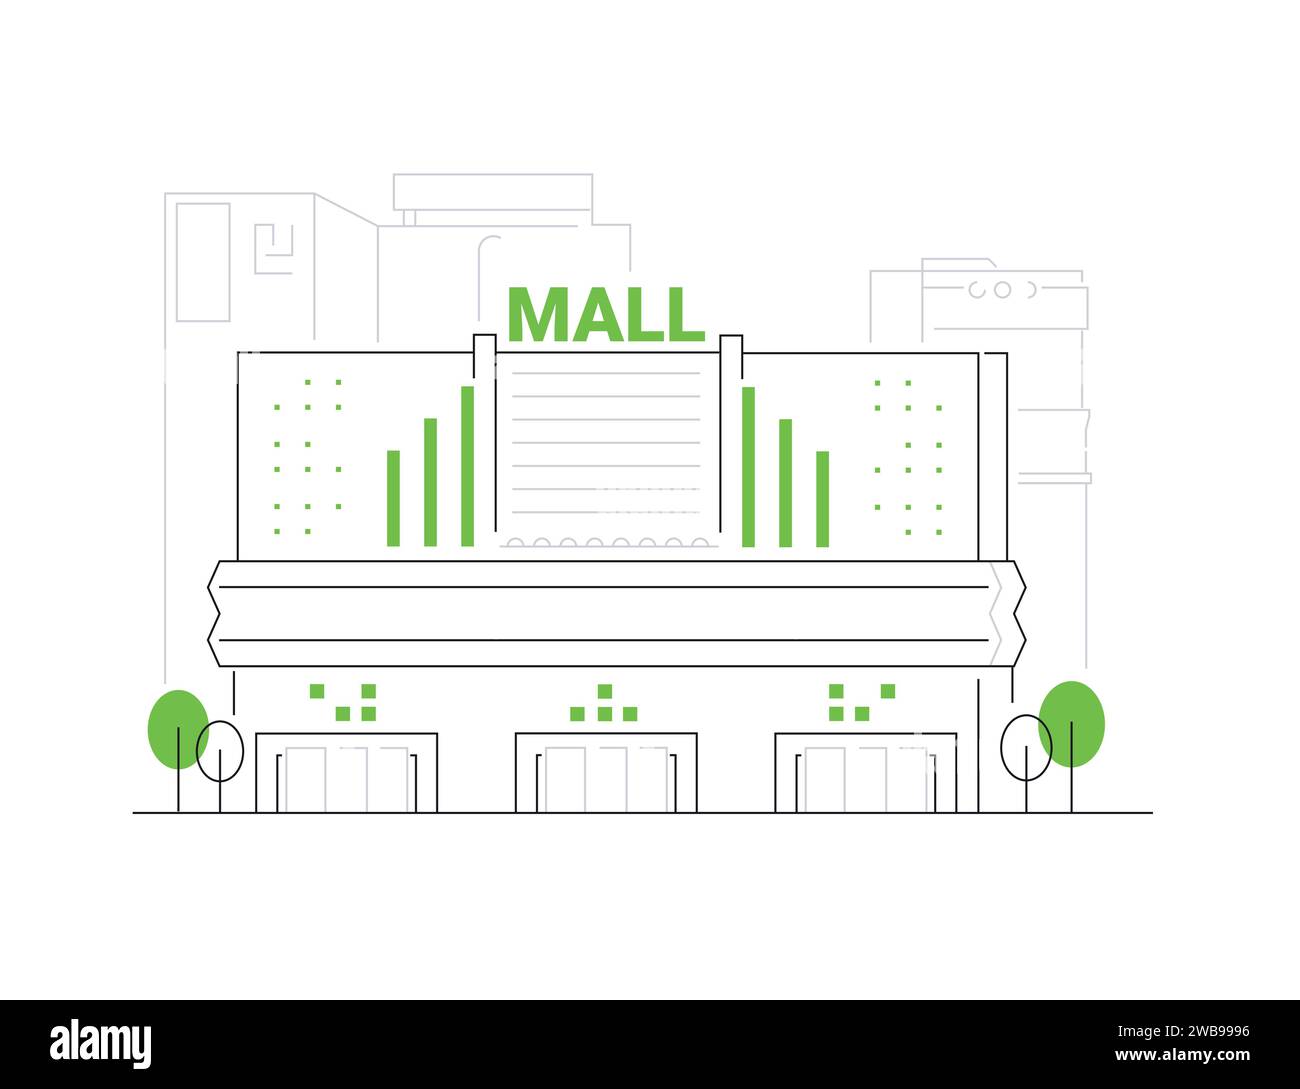 City shopping center - modern line design style illustration Stock Vector